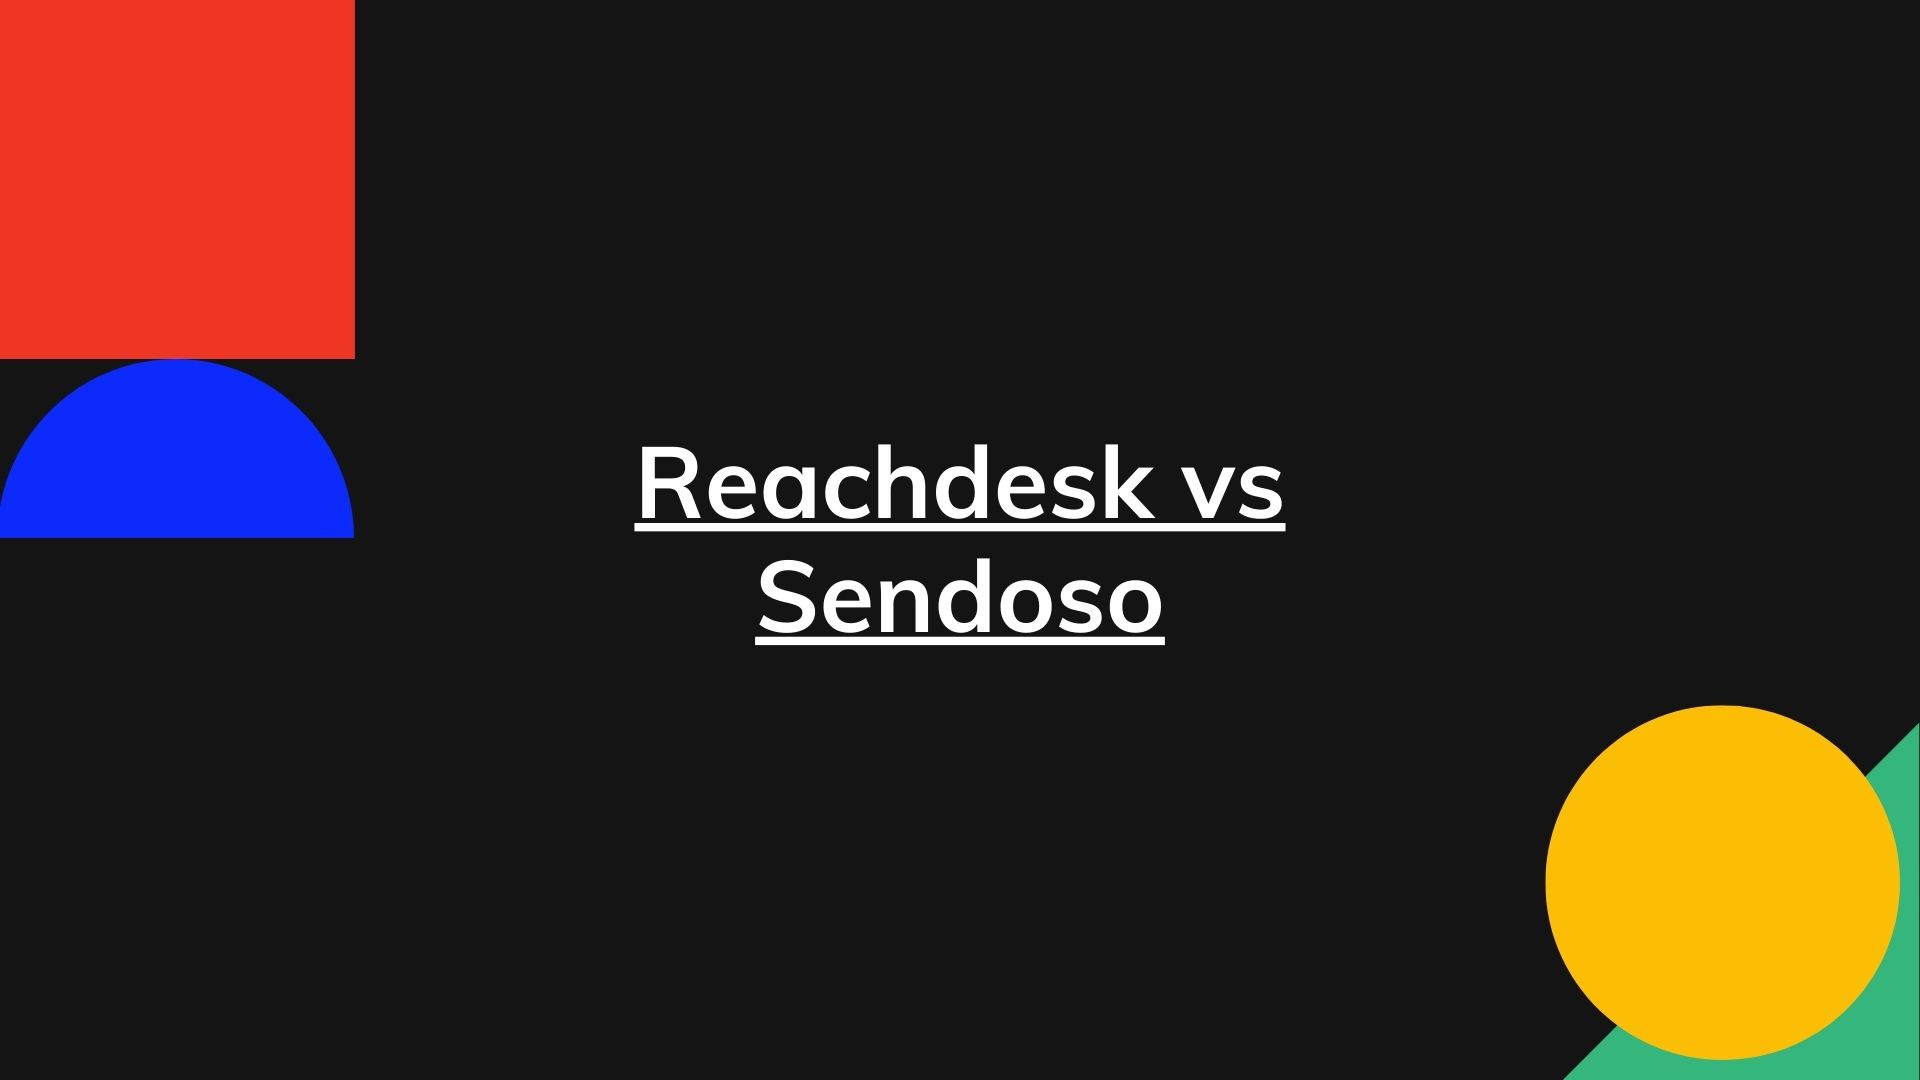 Reachdesk vs Sendoso